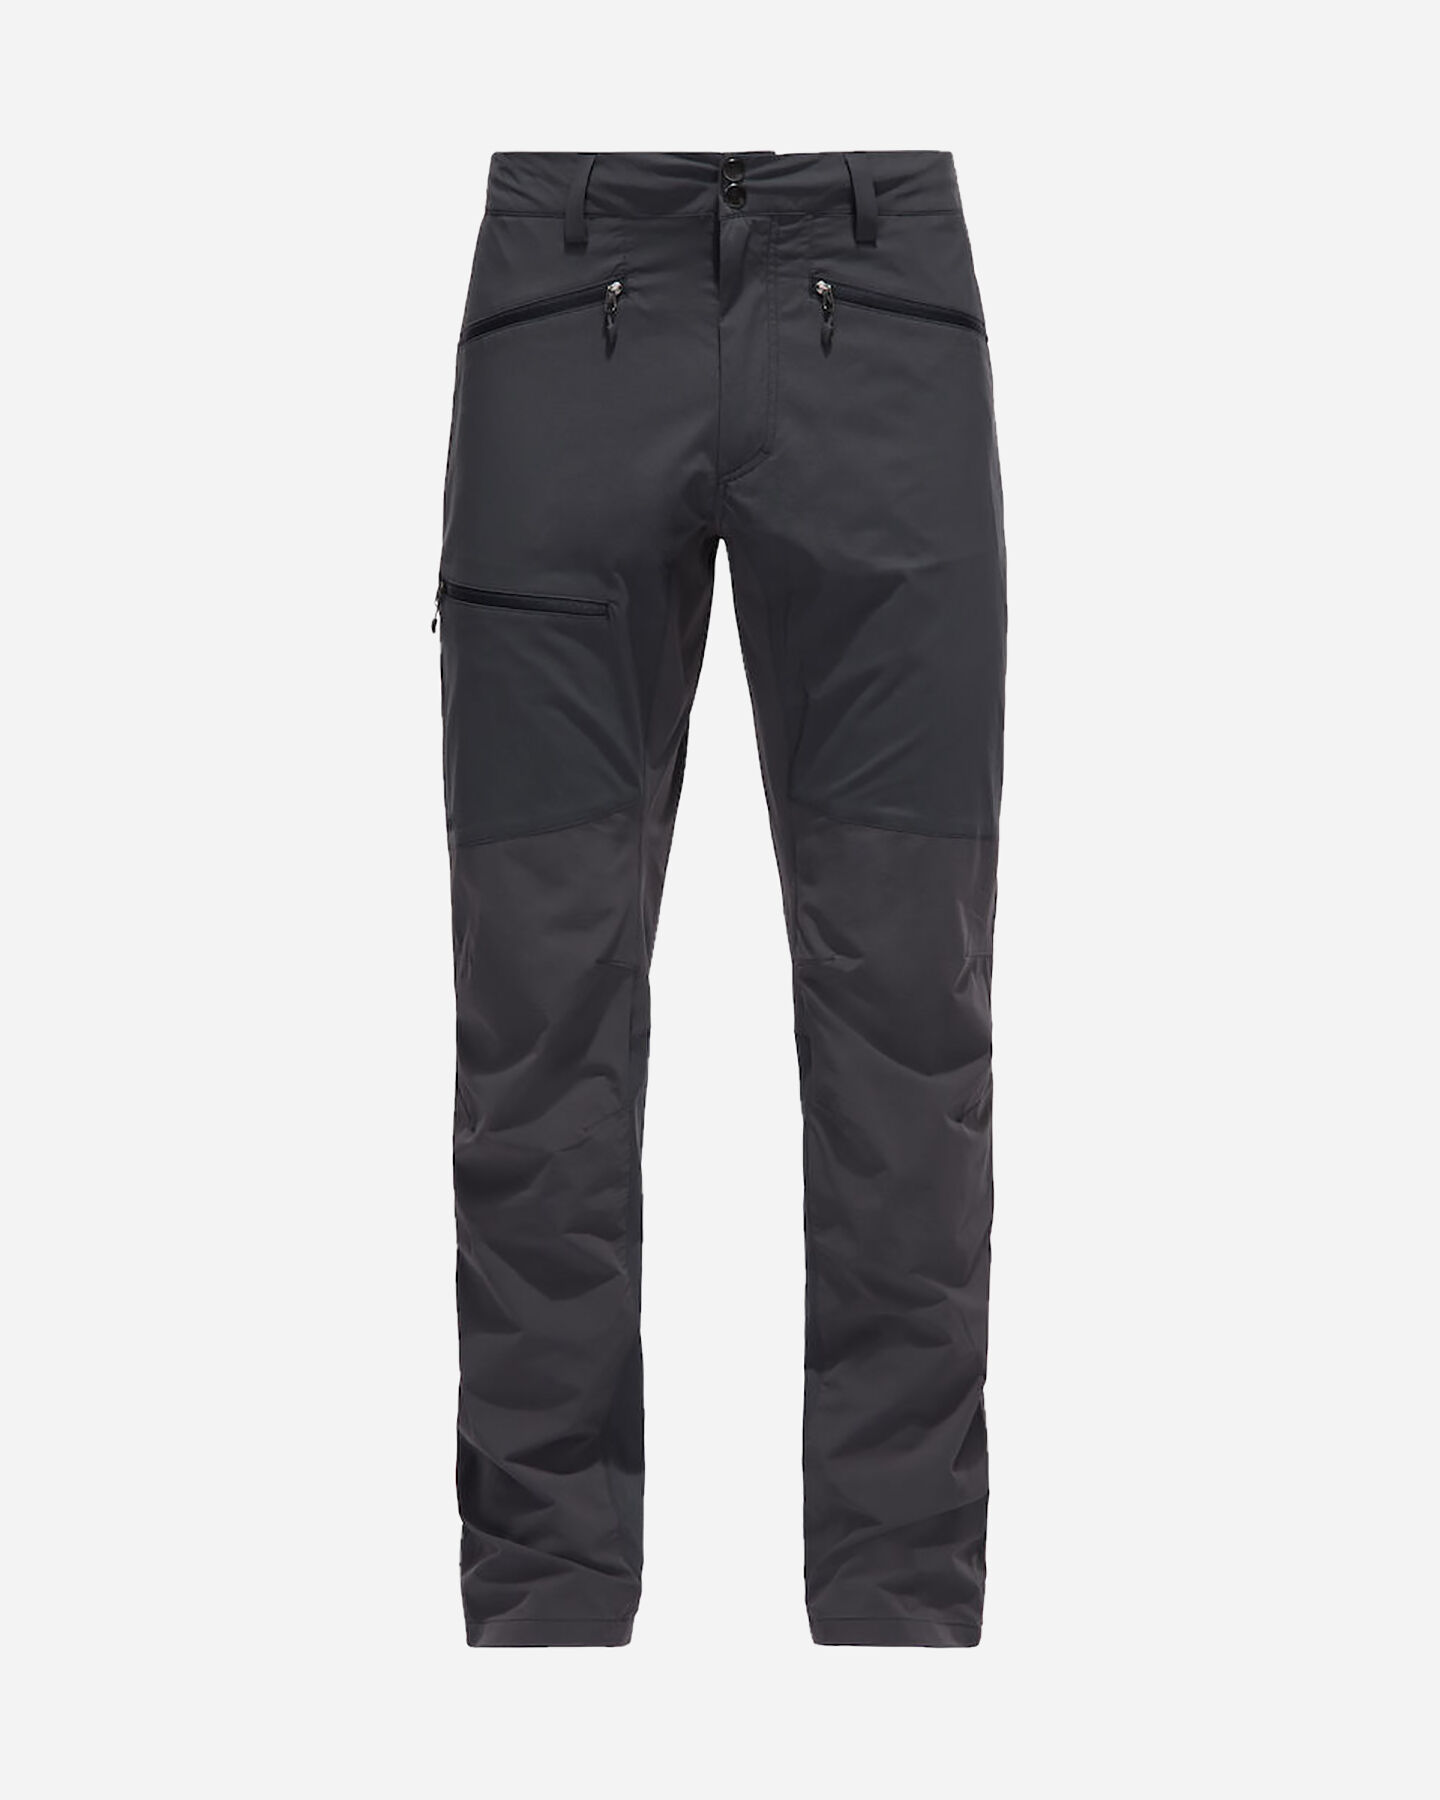  Pantalone outdoor HAGLOFS LITE FLEX  M S4077000|1|S scatto 0